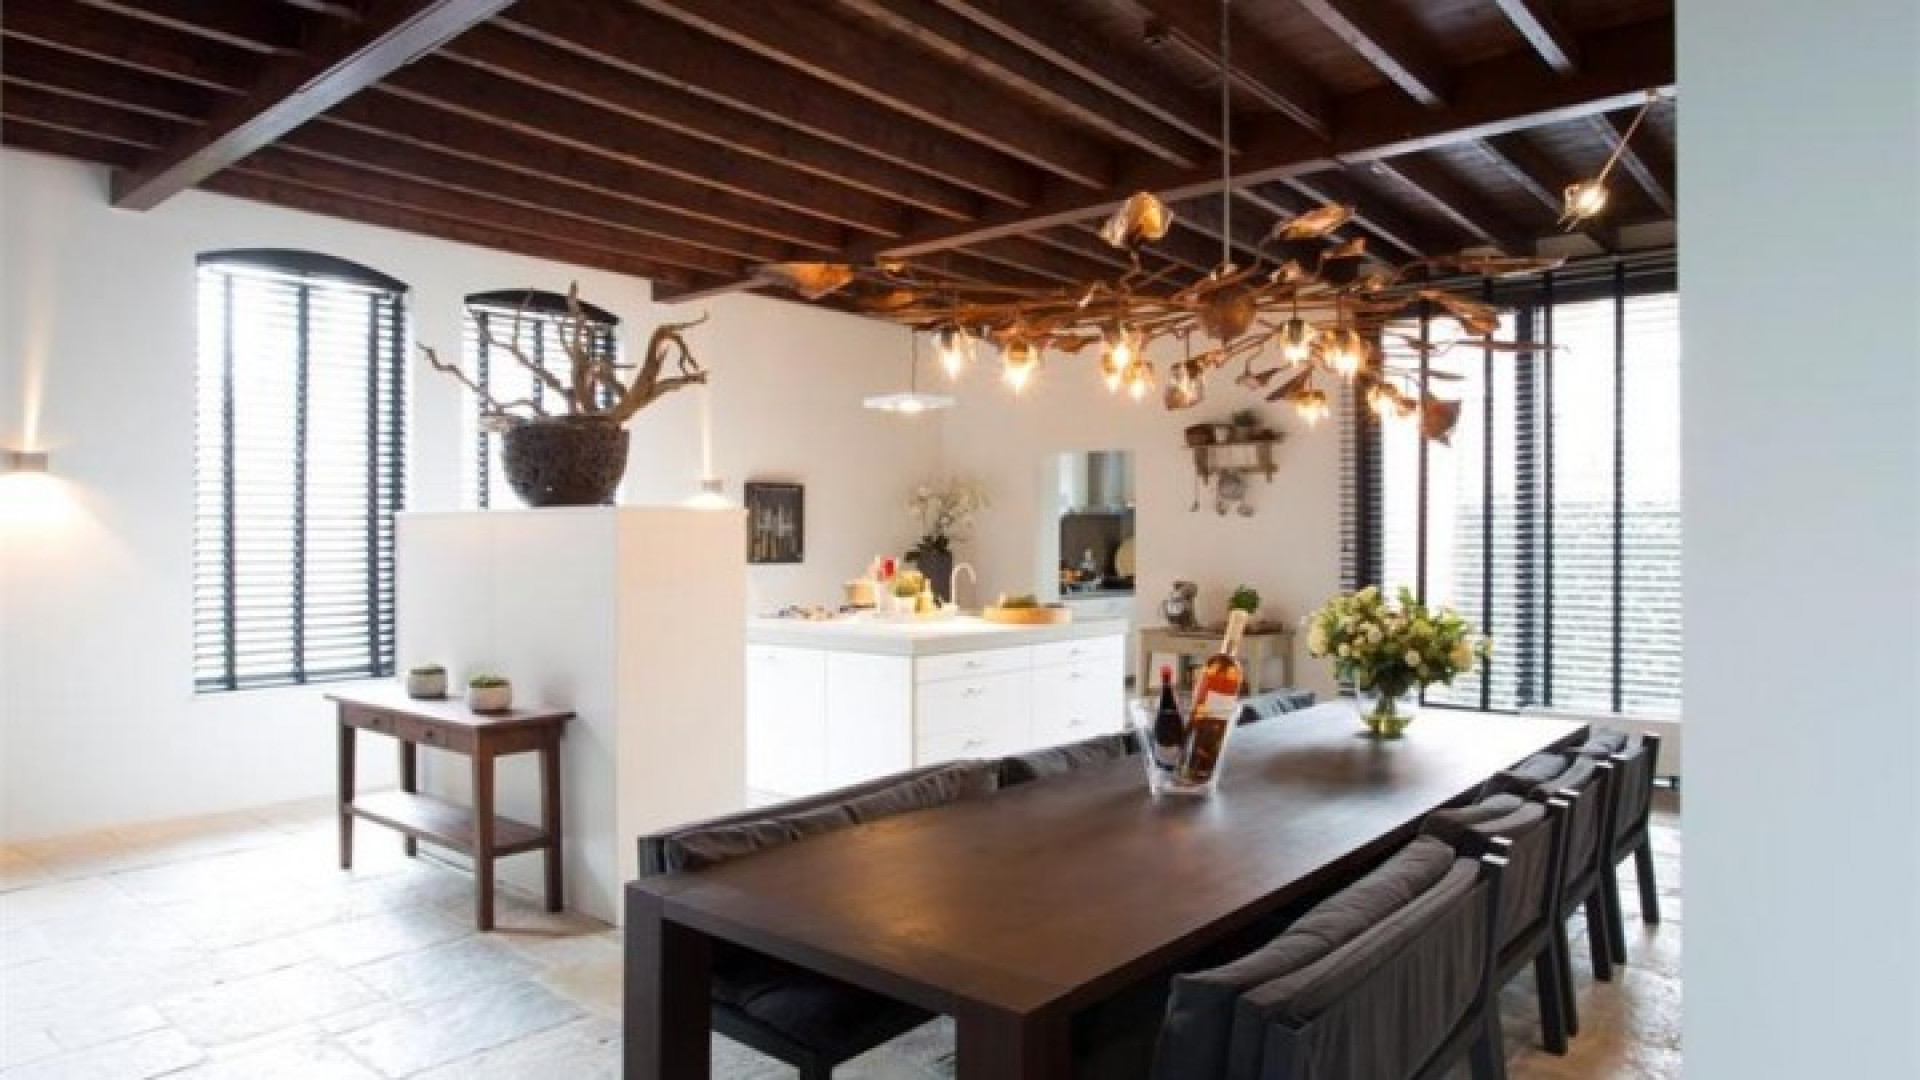 Tv kok Rudolph van Veen verkoopt zijn huis inclusief topkeuken. Zie foto's